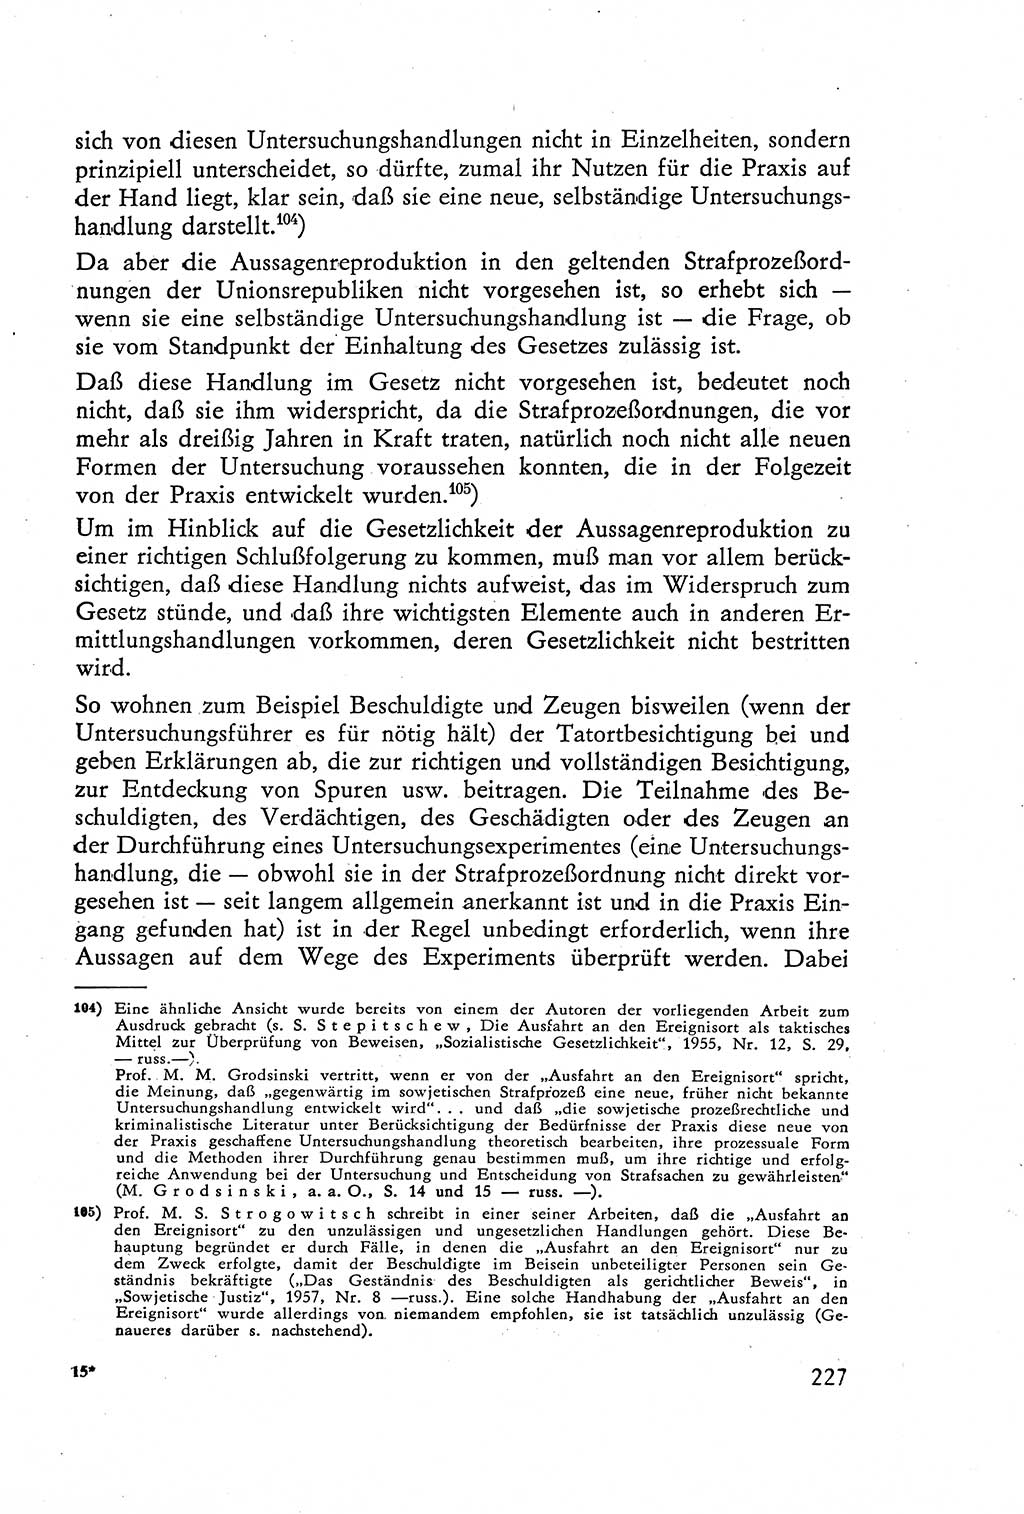 Die Vernehmung [Deutsche Demokratische Republik (DDR)] 1960, Seite 227 (Vern. DDR 1960, S. 227)